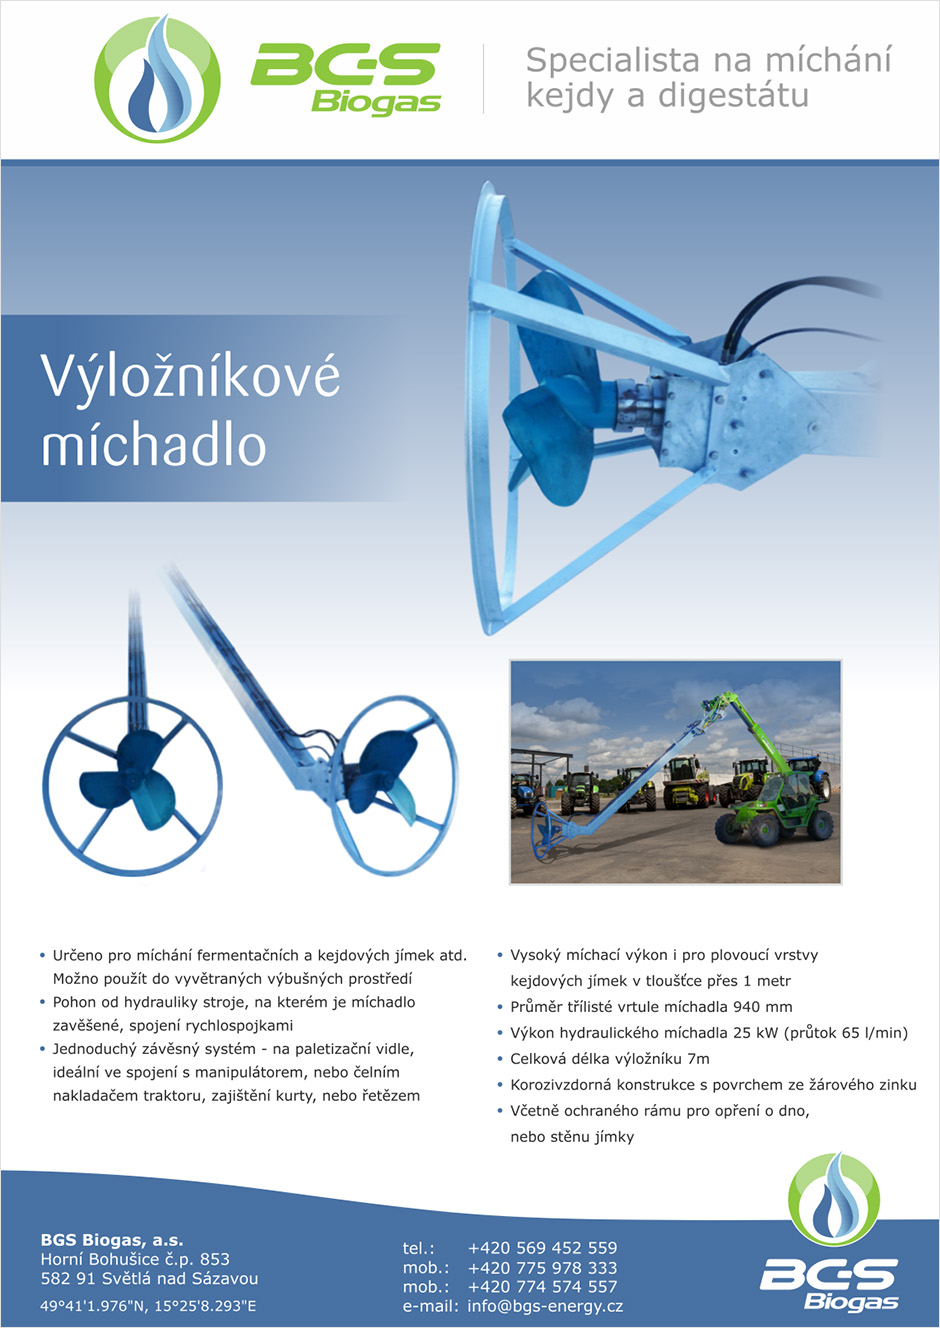 BGS-Biogas-Vyloznikove-michadlo